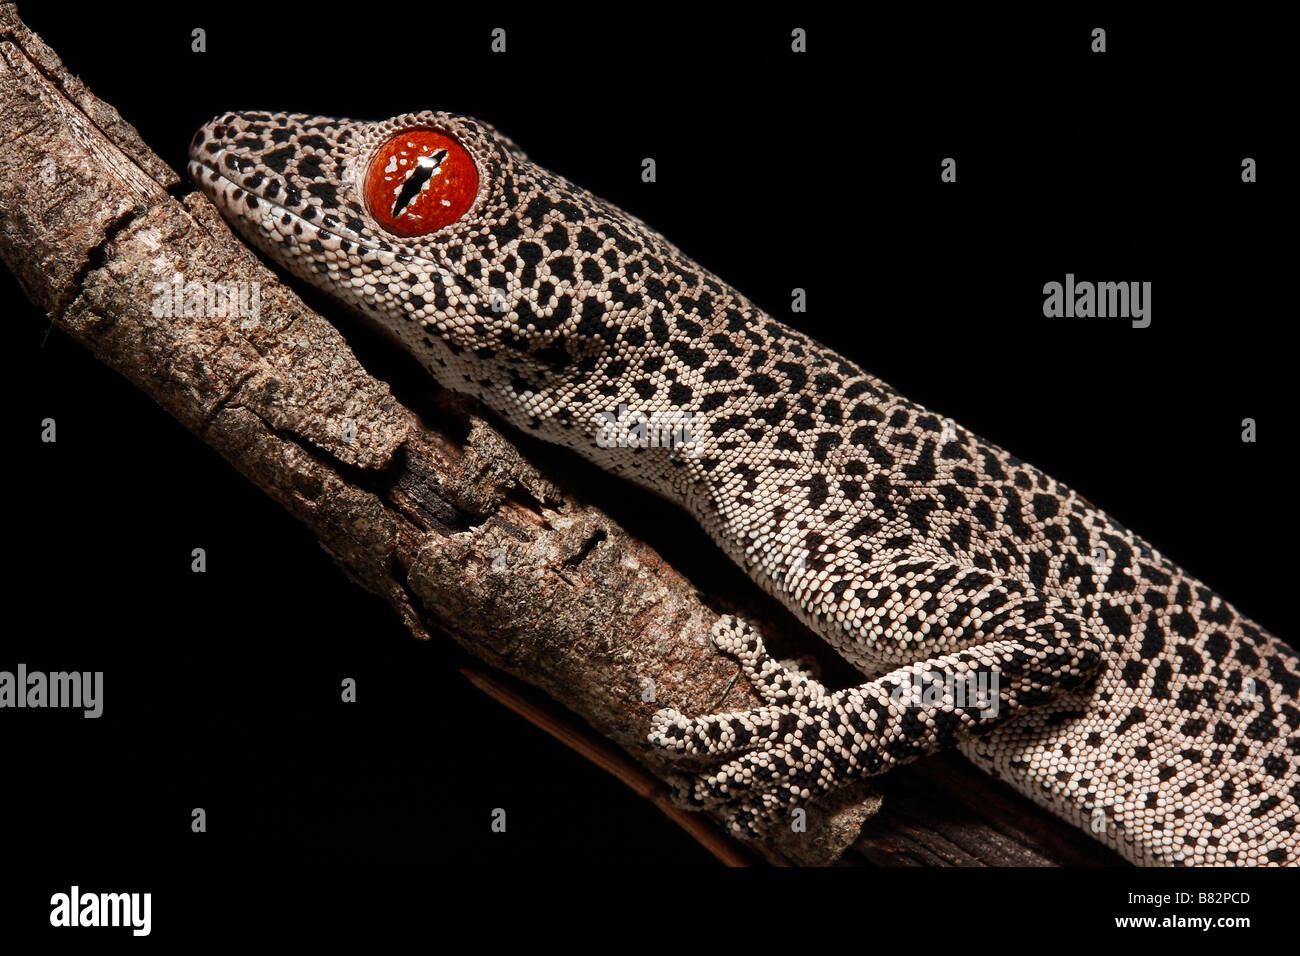 Australian Golden-tailed Gecko (Strophurus taenicauda) Stock Photo